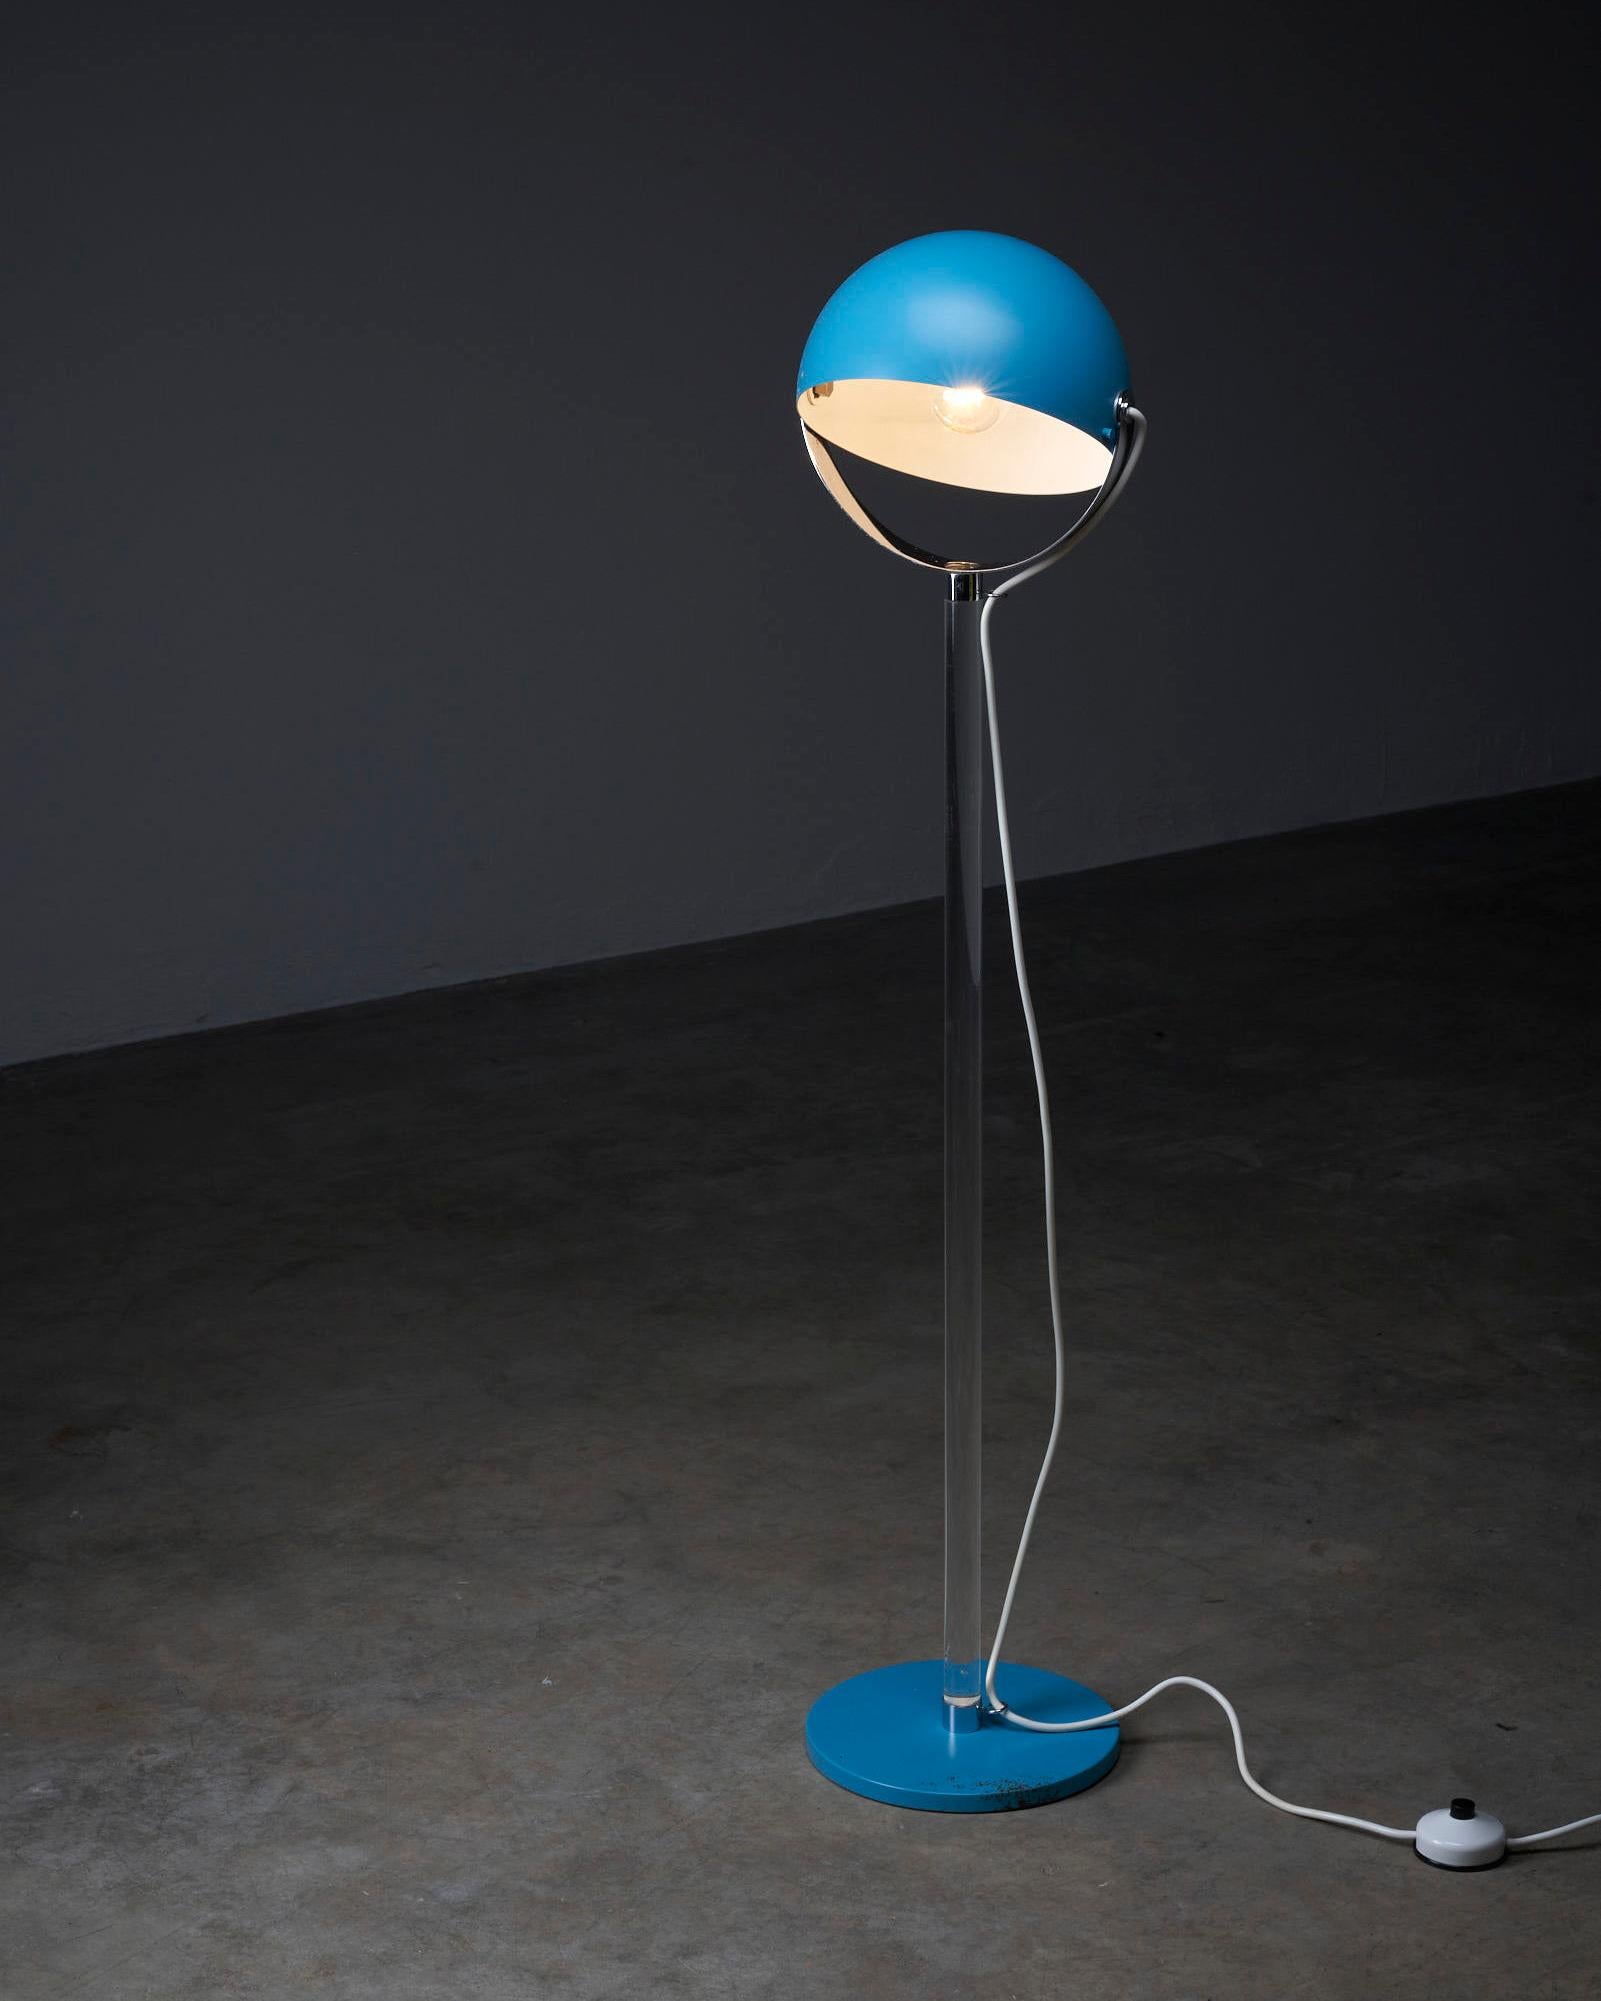 Voici le captivant lampadaire bleu turquoise de Cosack, un éminent fabricant allemand de luminaires. Ce lampadaire arbore un design unique qui ne manquera pas de faire sensation dans n'importe quel espace.

La lampe est dotée d'une étonnante tige en